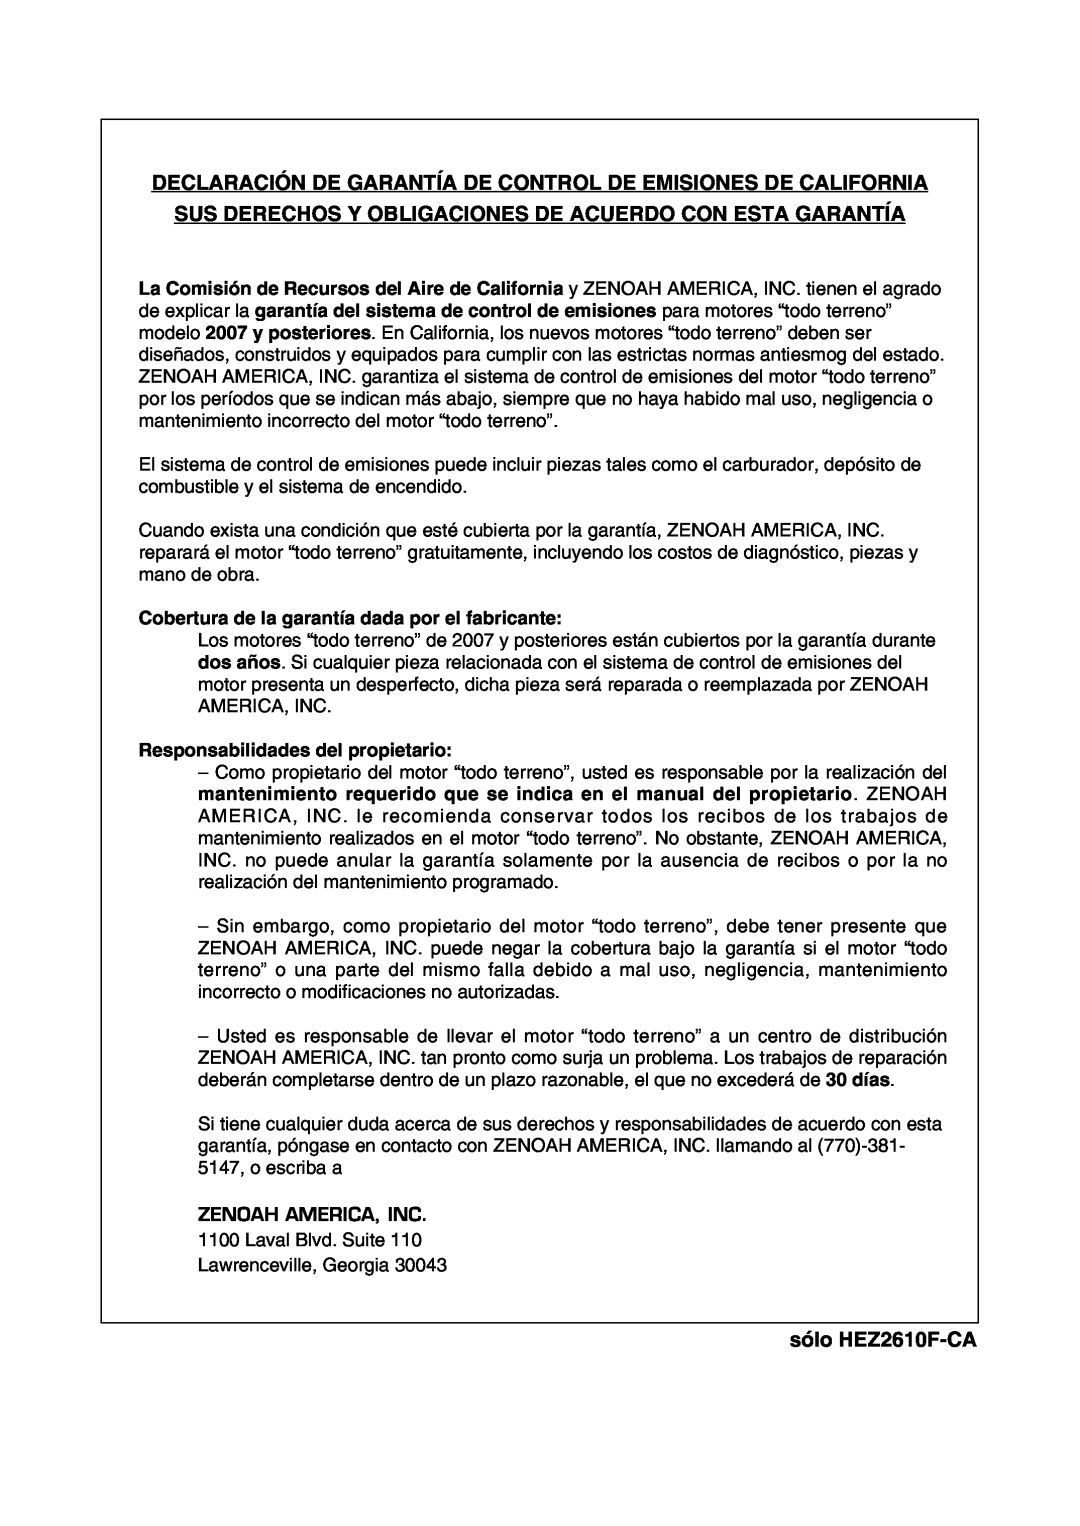 Zenoah manual Declaración De Garantía De Control De Emisiones De California, sólo HEZ2610F-CA 